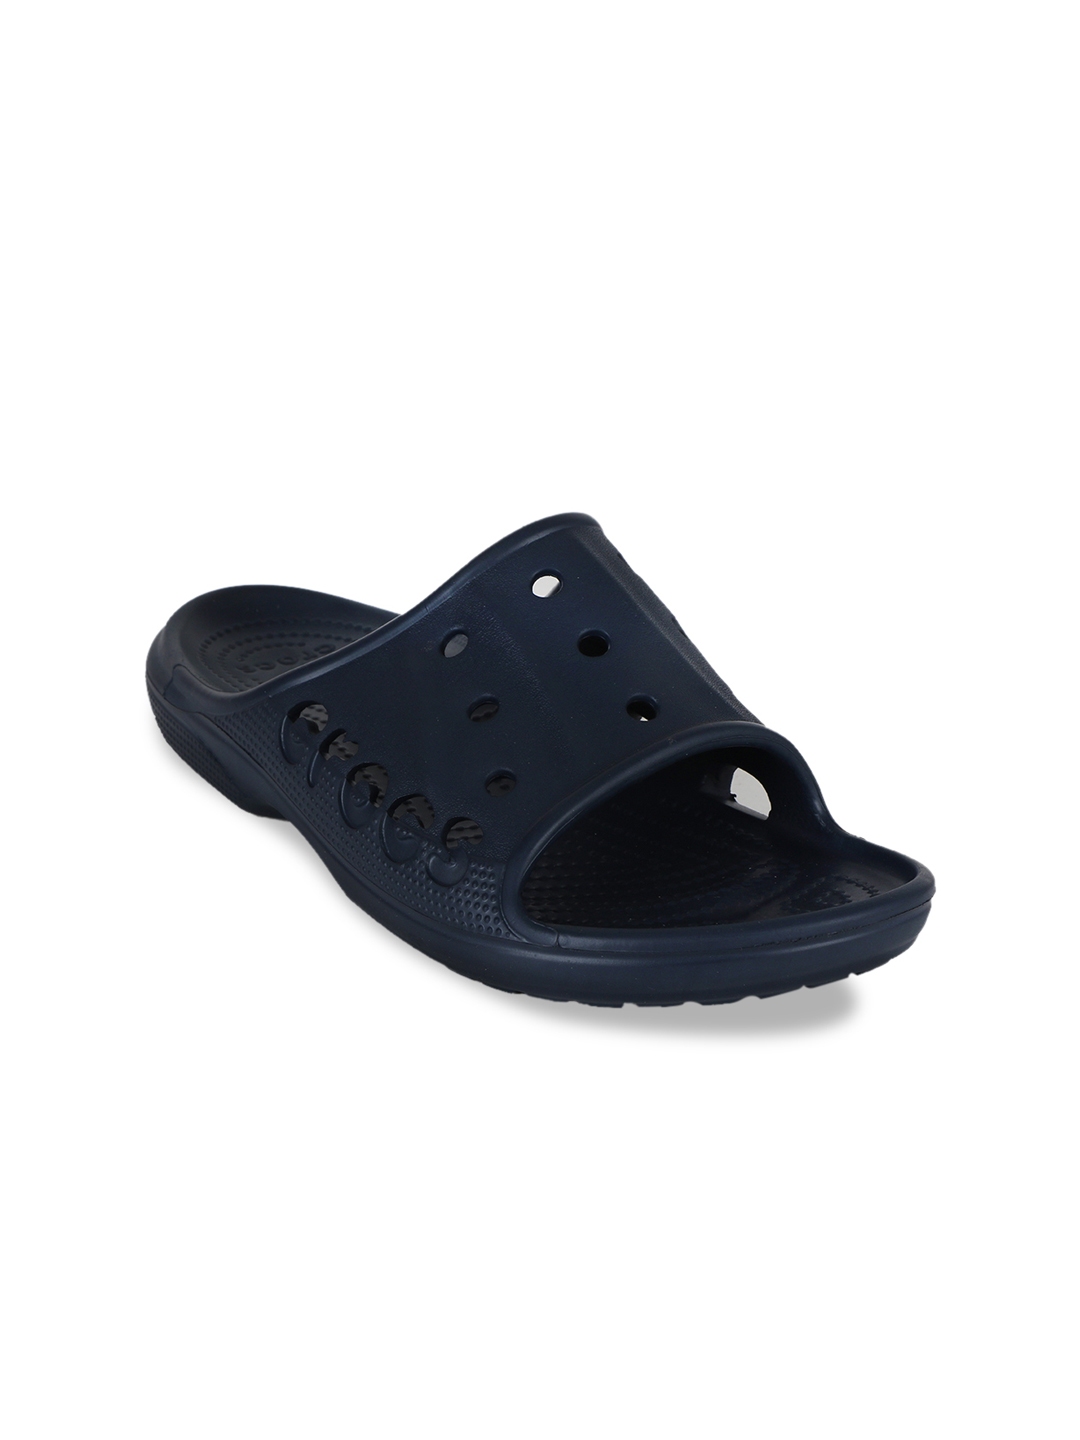 Buy Crocs Men Navy Blue Solid Sliders - Flip Flops for Men 9648757 | Myntra